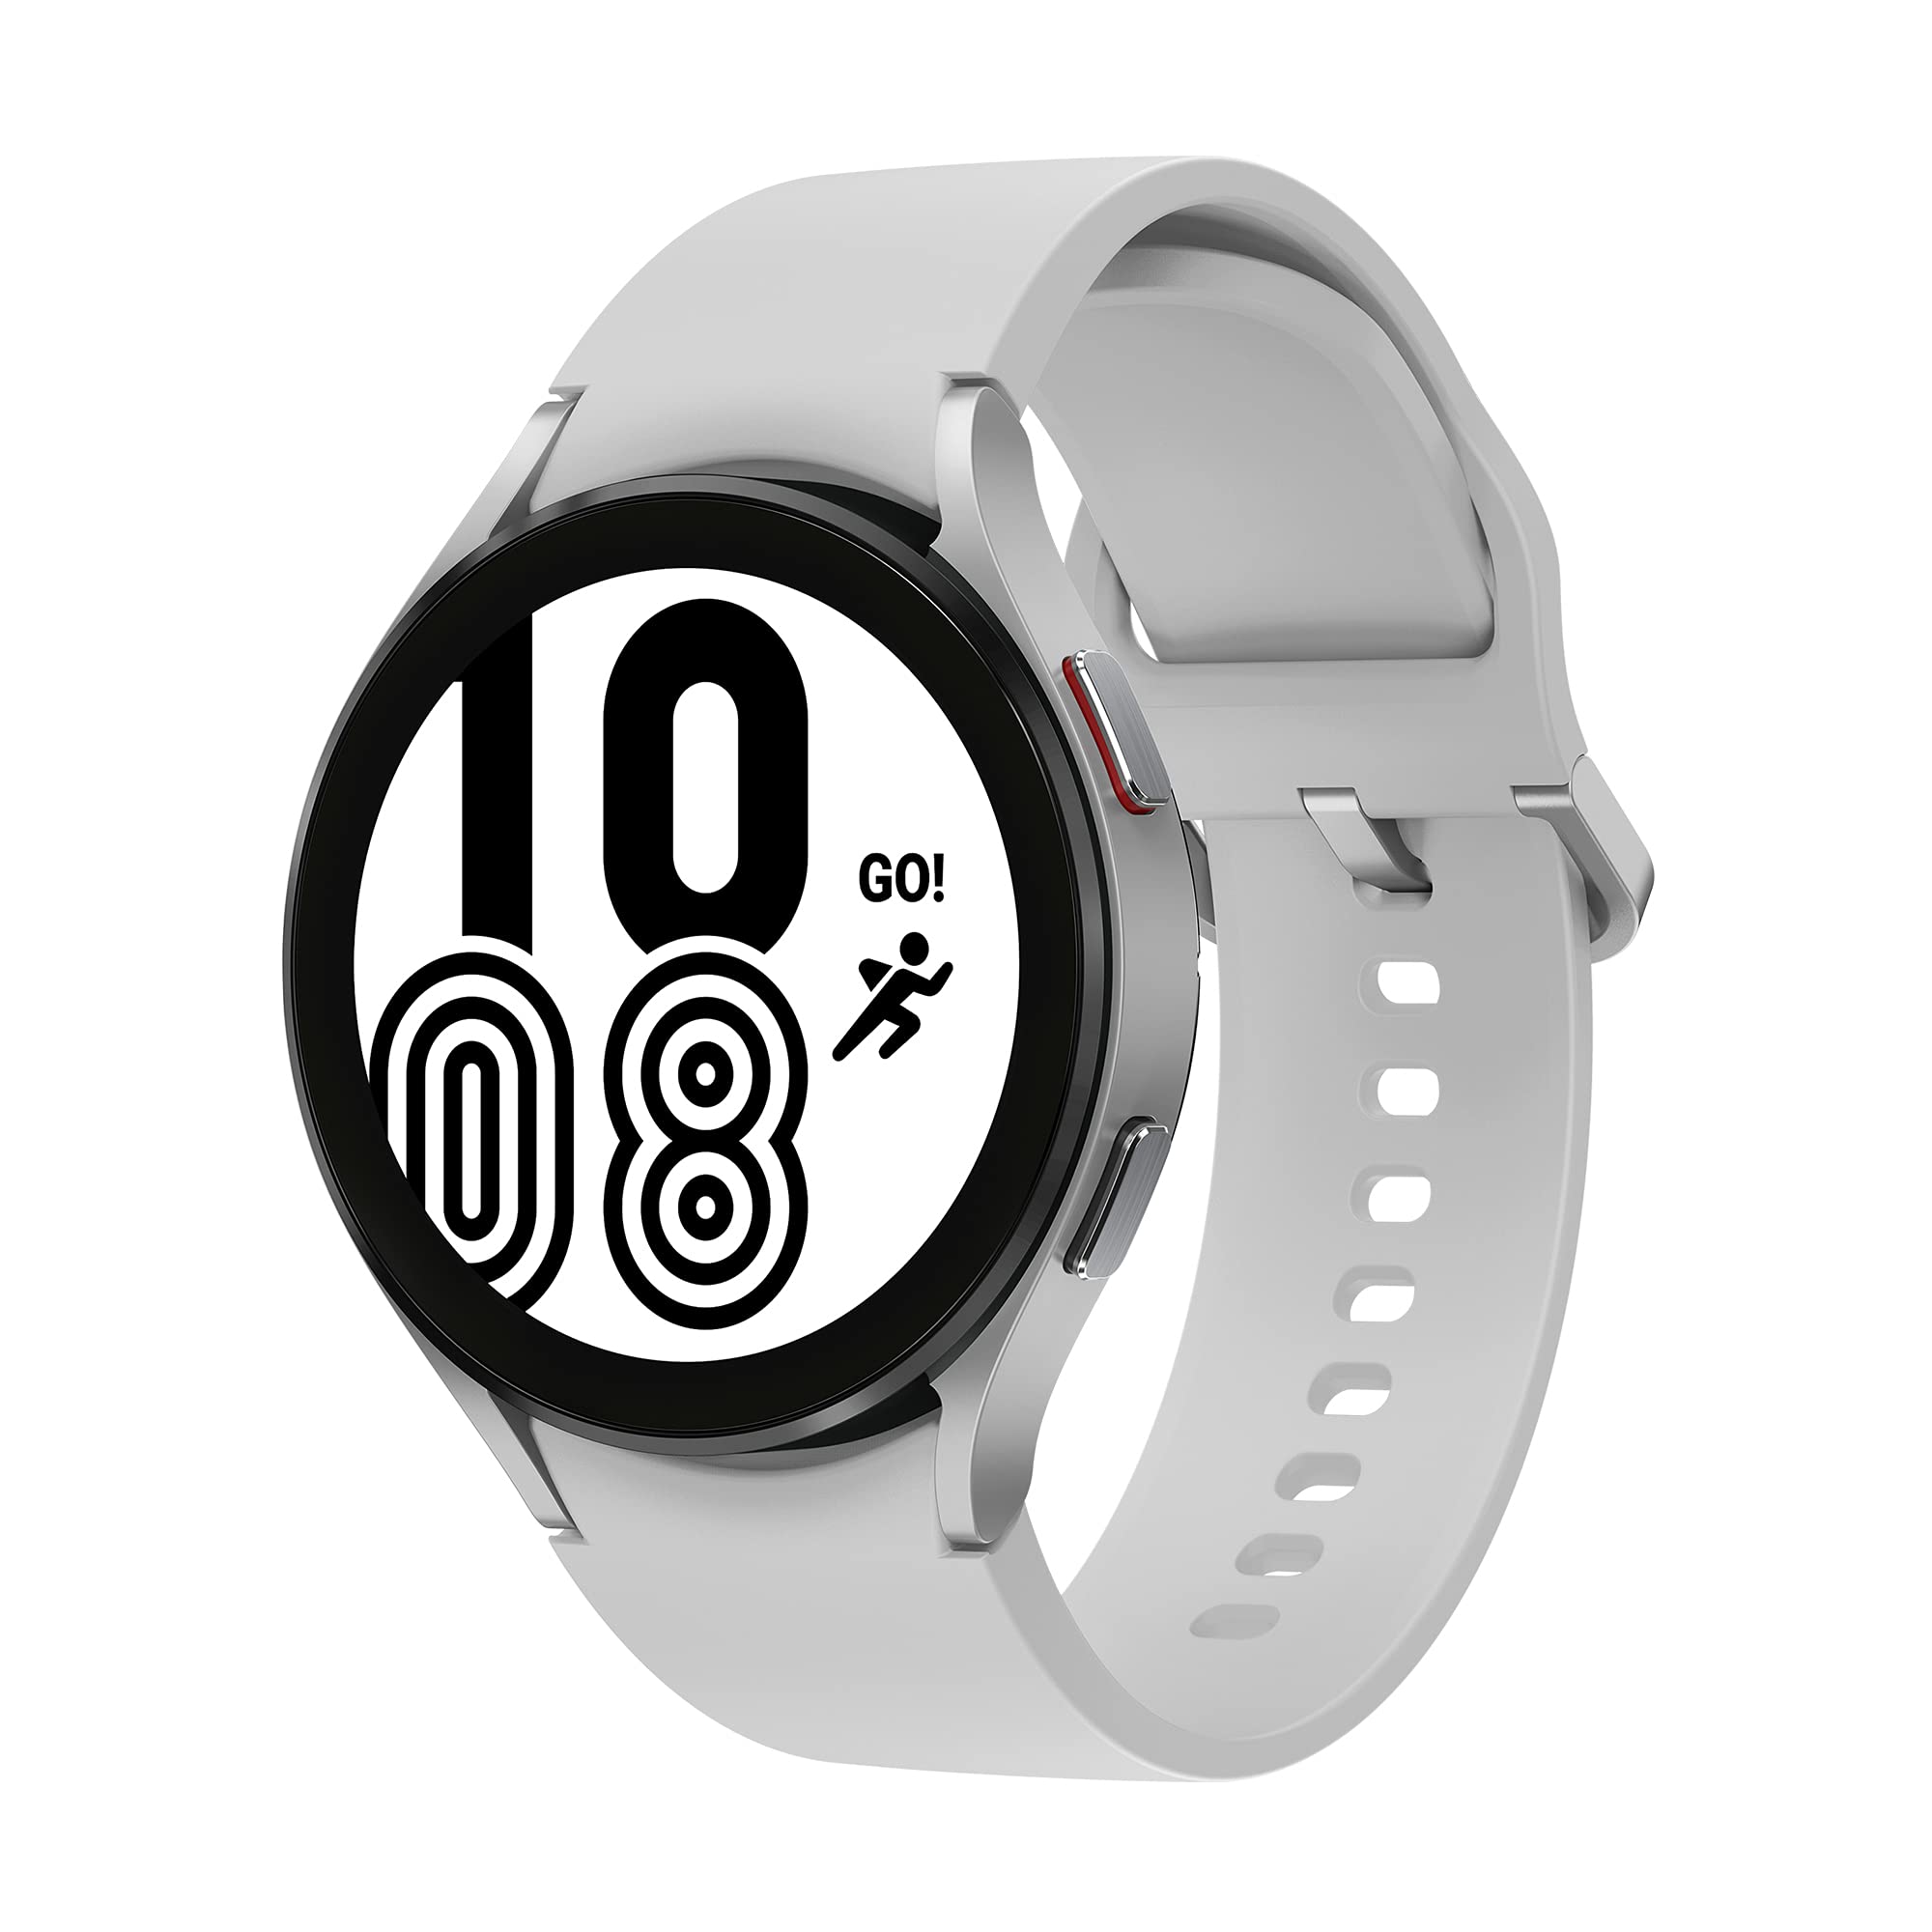 Samsung Galaxy Watch4, Runde Bluetooth Smartwatch, Wear OS, Fitnessuhr, Fitness-Tracker, 44 mm, Silver inkl. 36 Monate Herstellergarantie [Exkl. bei Amazon]